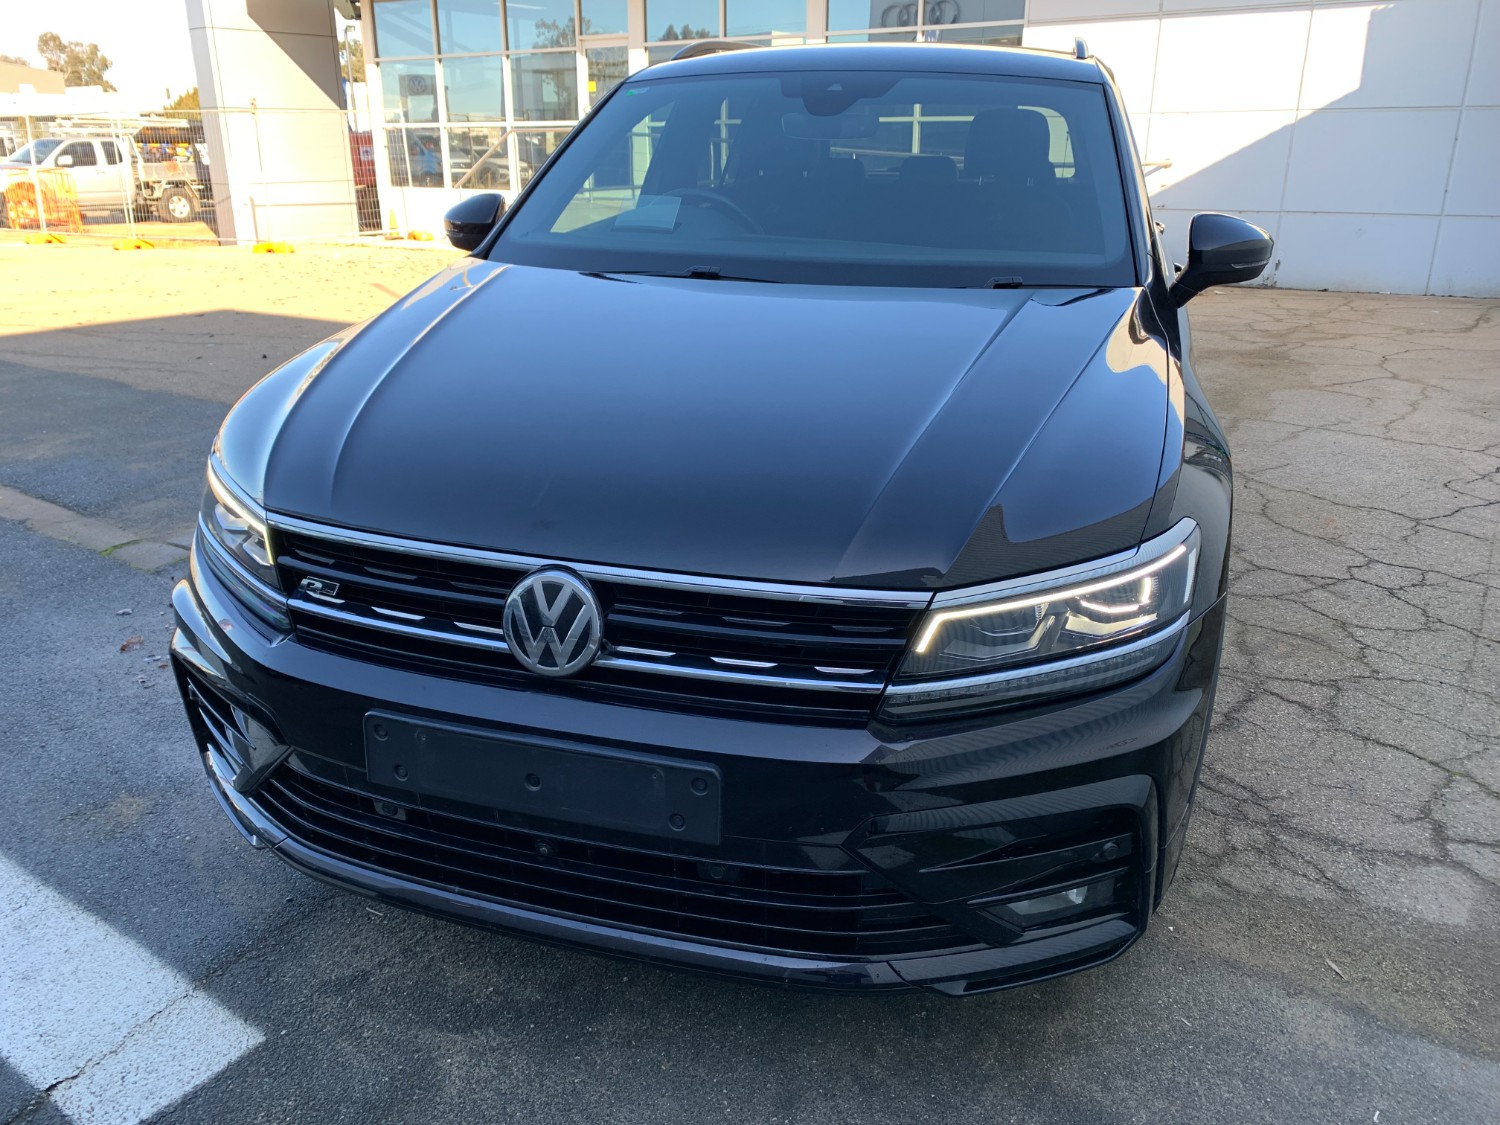 2019 Volkswagen Tiguan Wagon Image 12